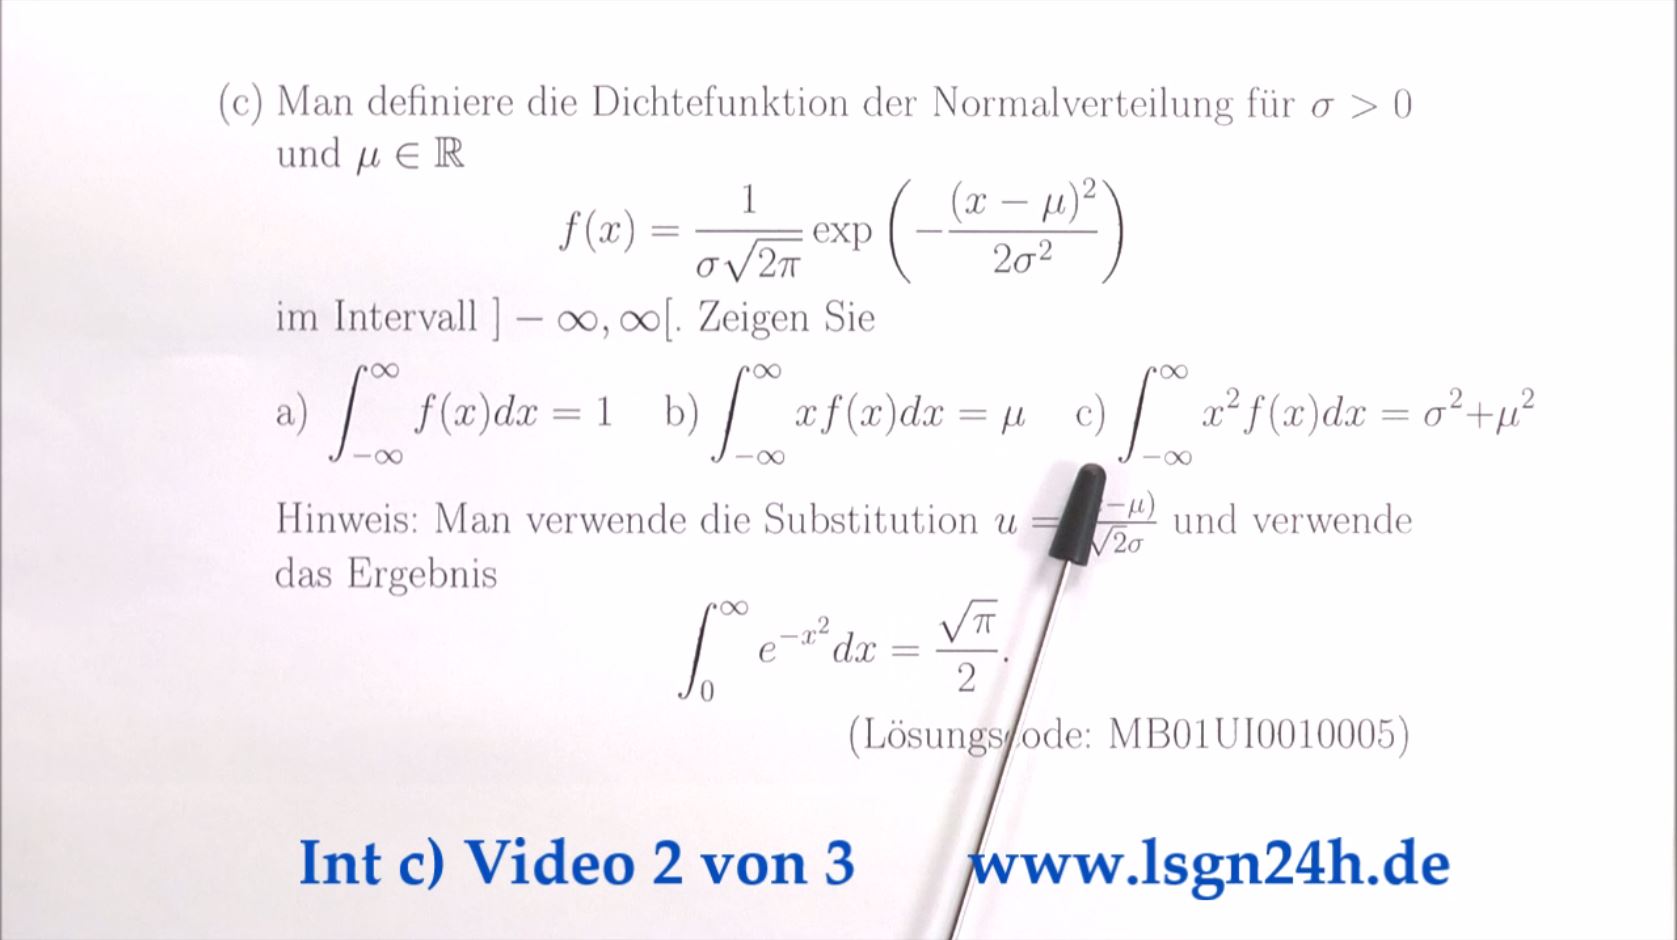 Integral über die Dichtefunktion der Normalverteilung mit Faktor $x^2$  (2 von 3)